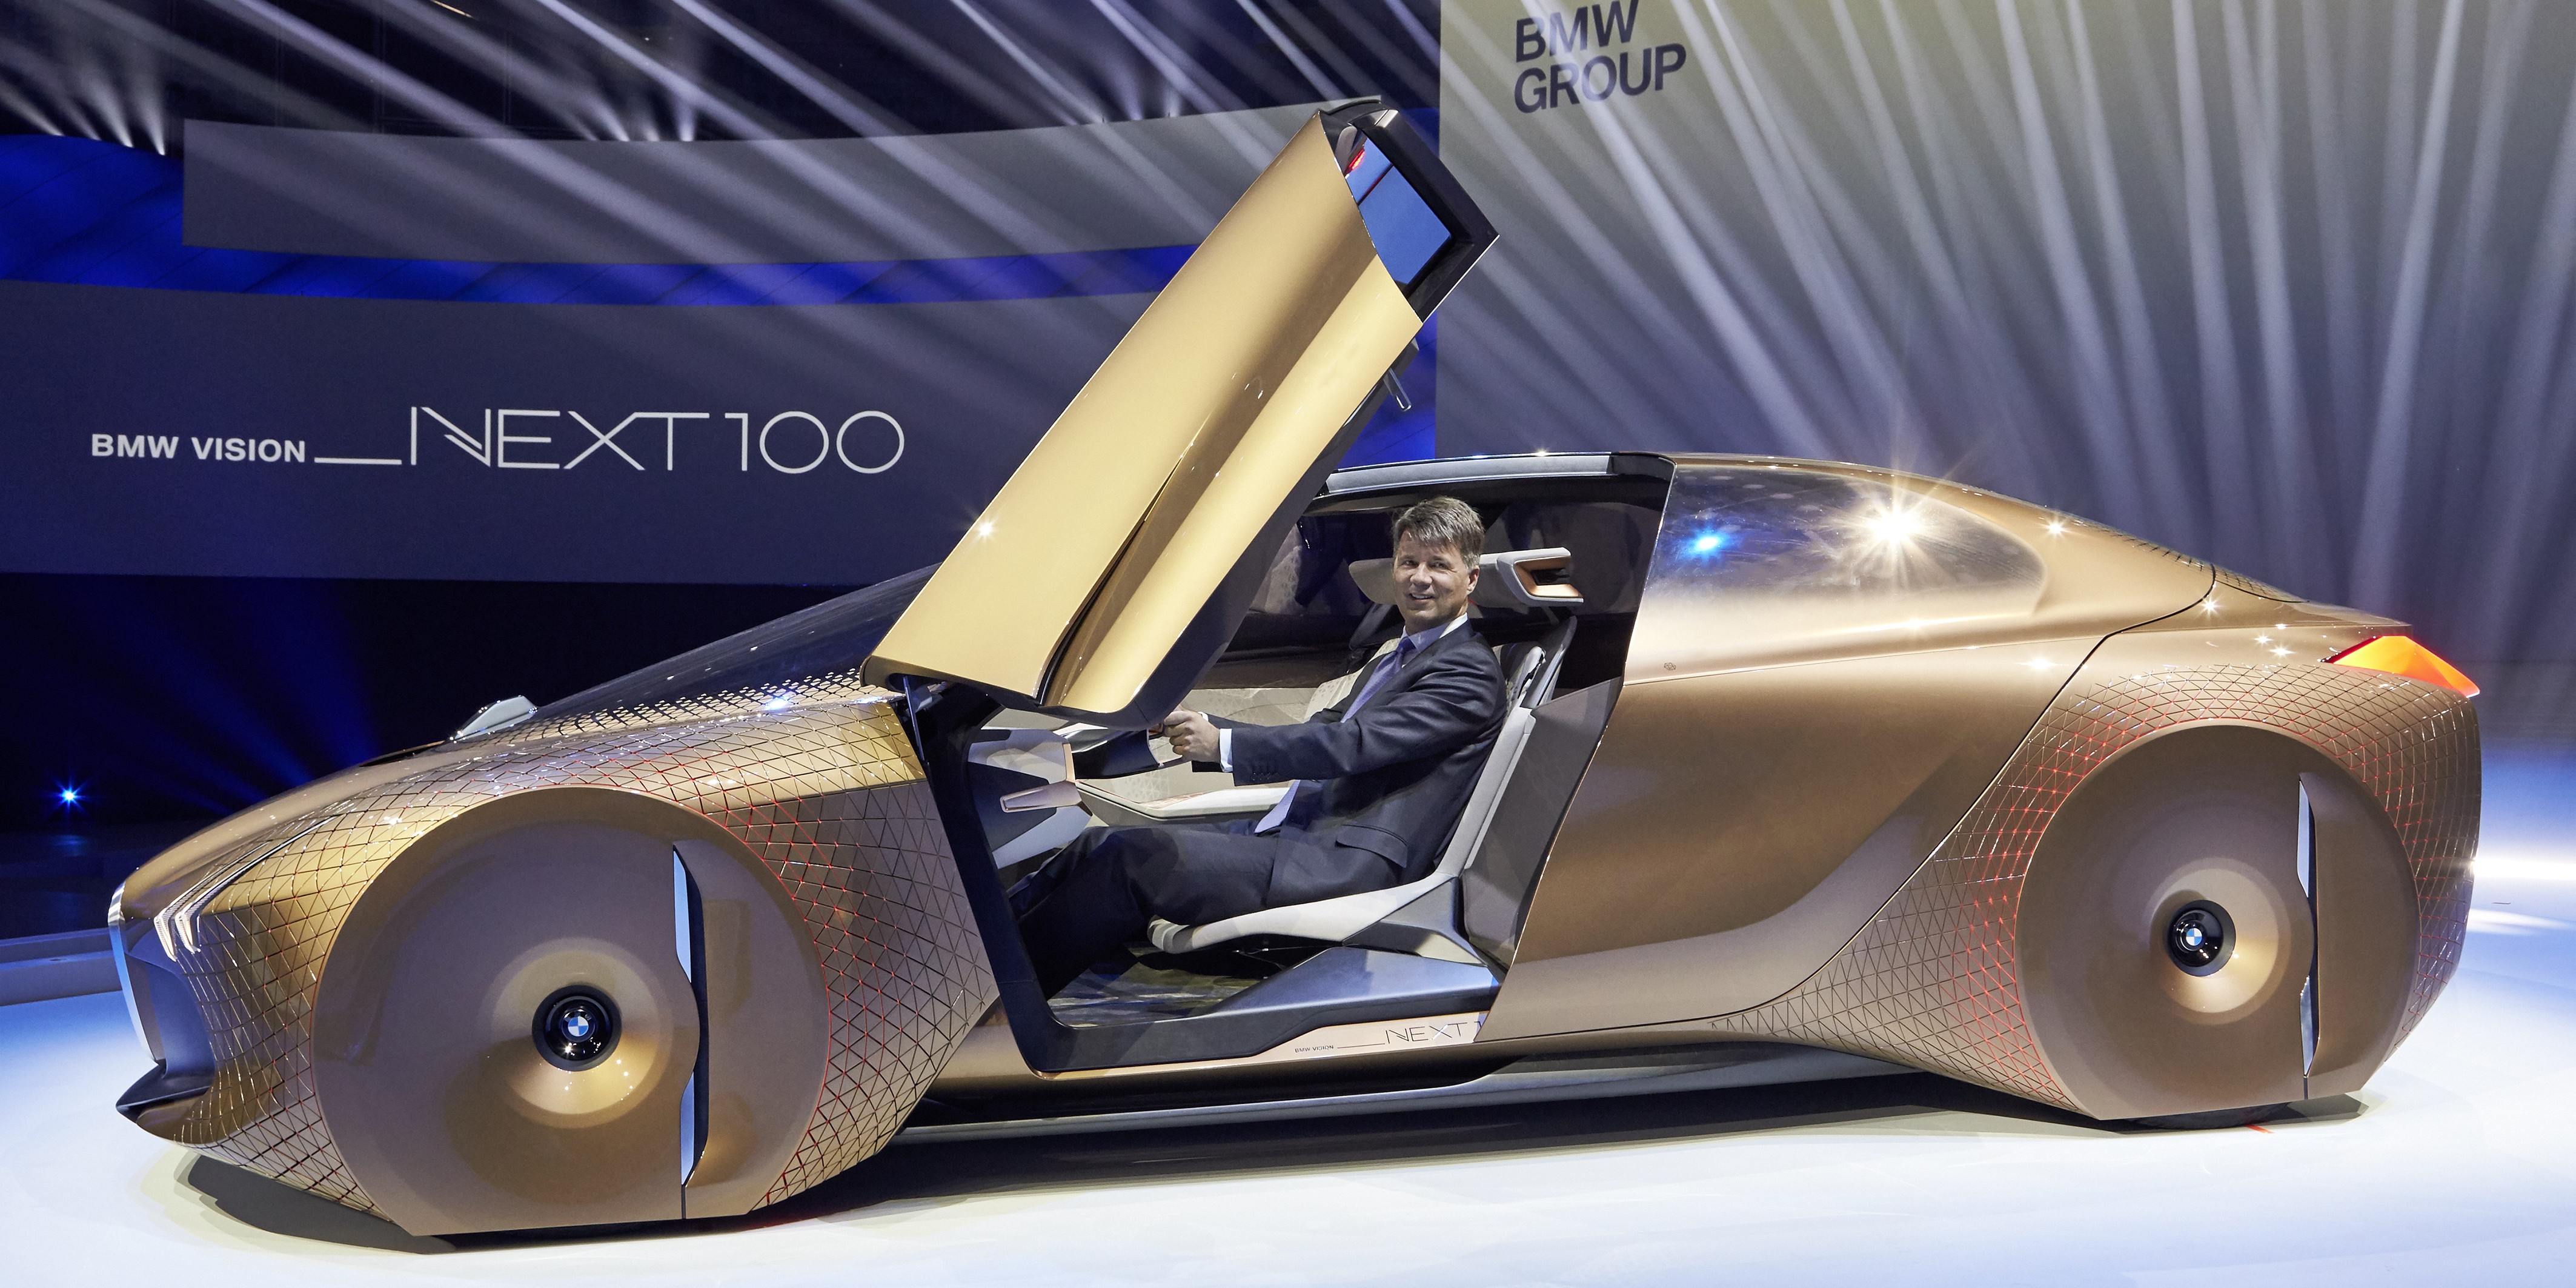 BMW unveils new crazy looking autonomous vehicle concept to celebrate